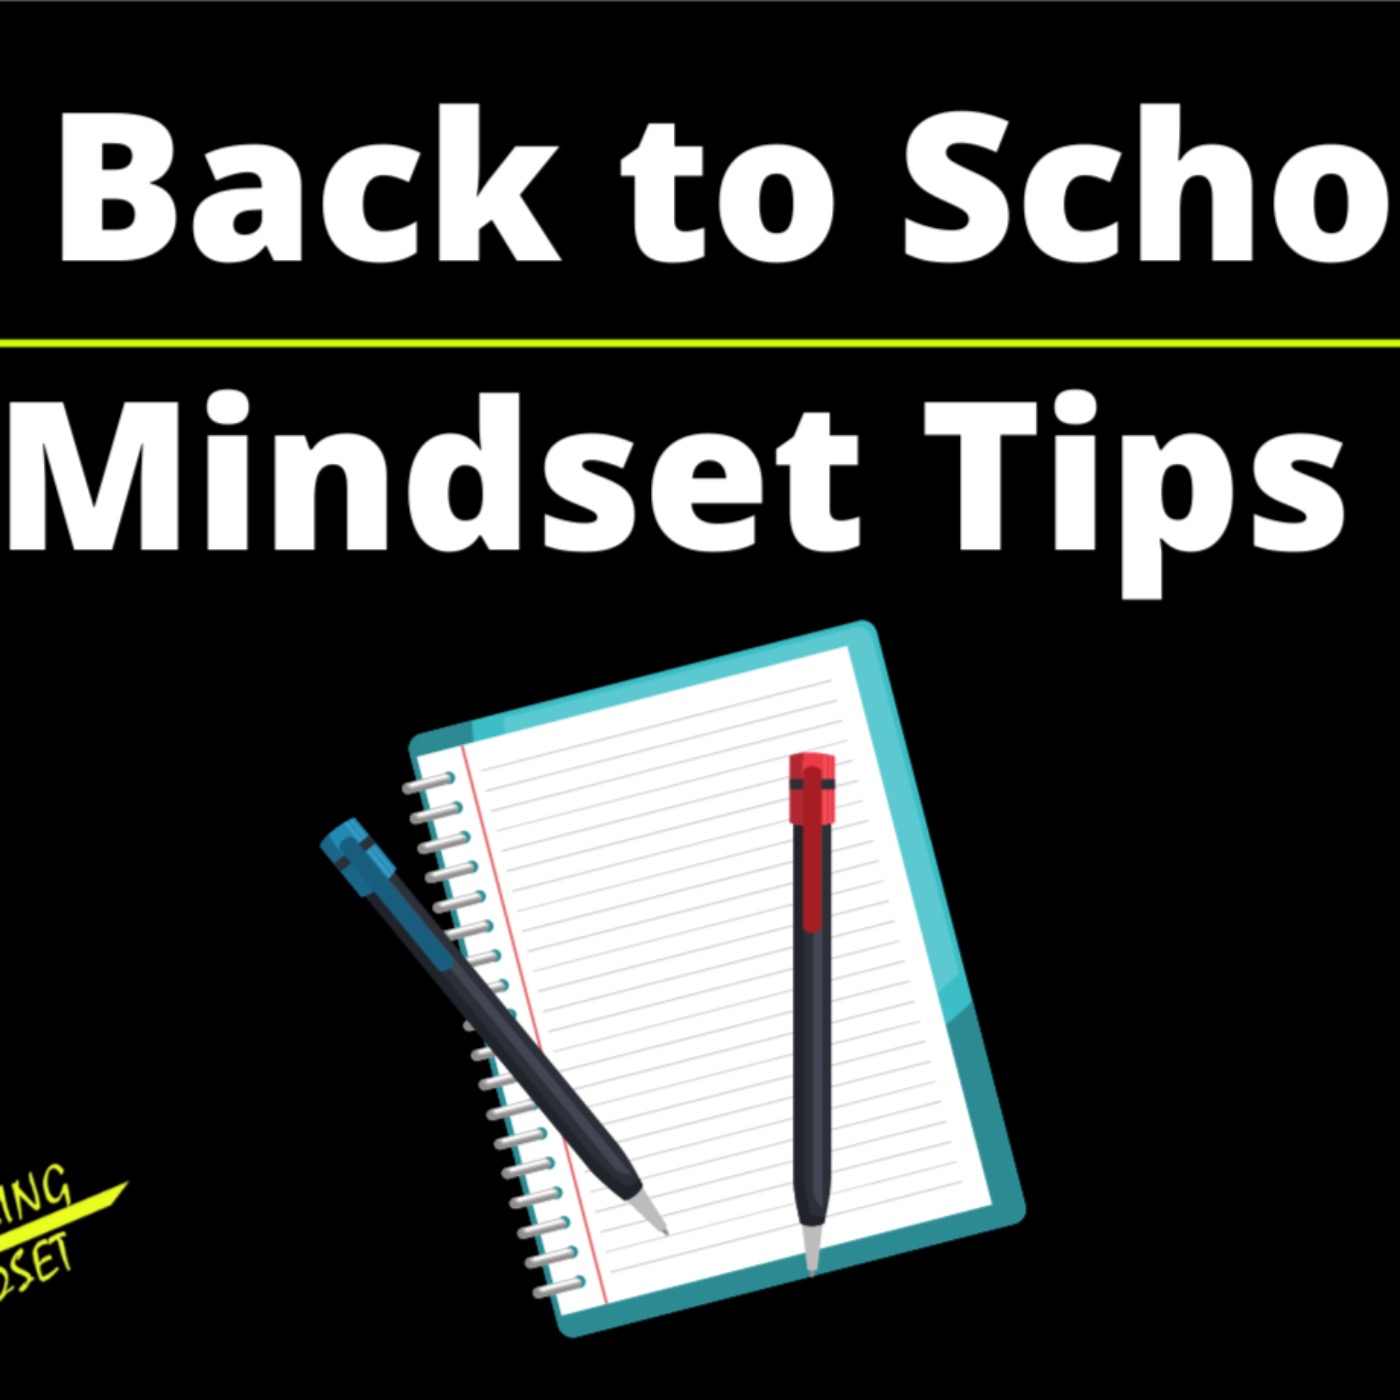 10 Back to School Mindset Tips